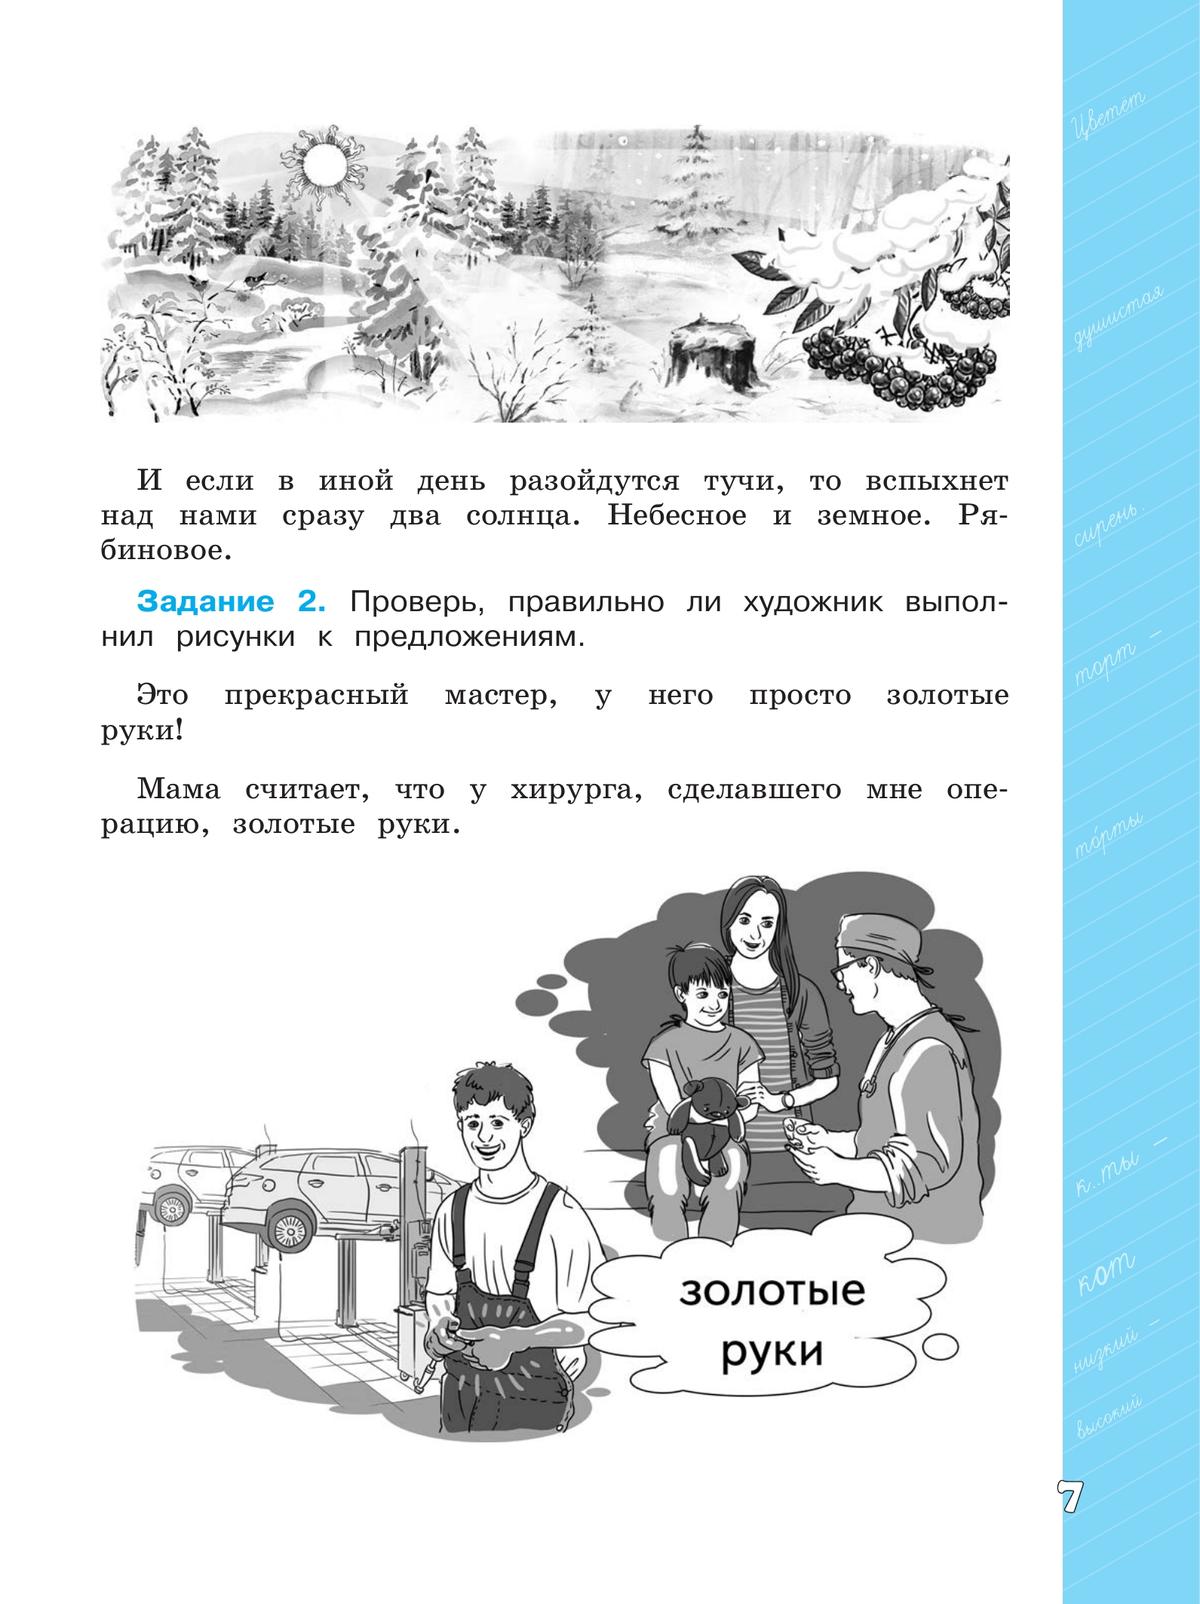 Языковая грамотность. Русский язык. Развитие. Диагностика. 4 класс 3